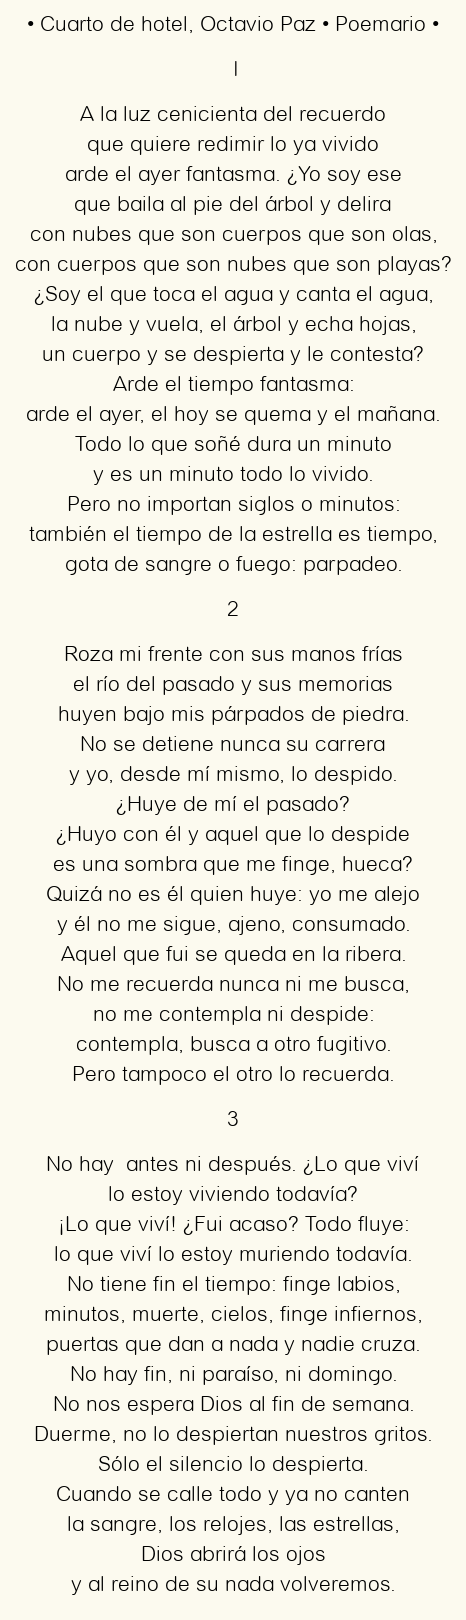 Imagen con el poema Cuarto de hotel, por Octavio Paz